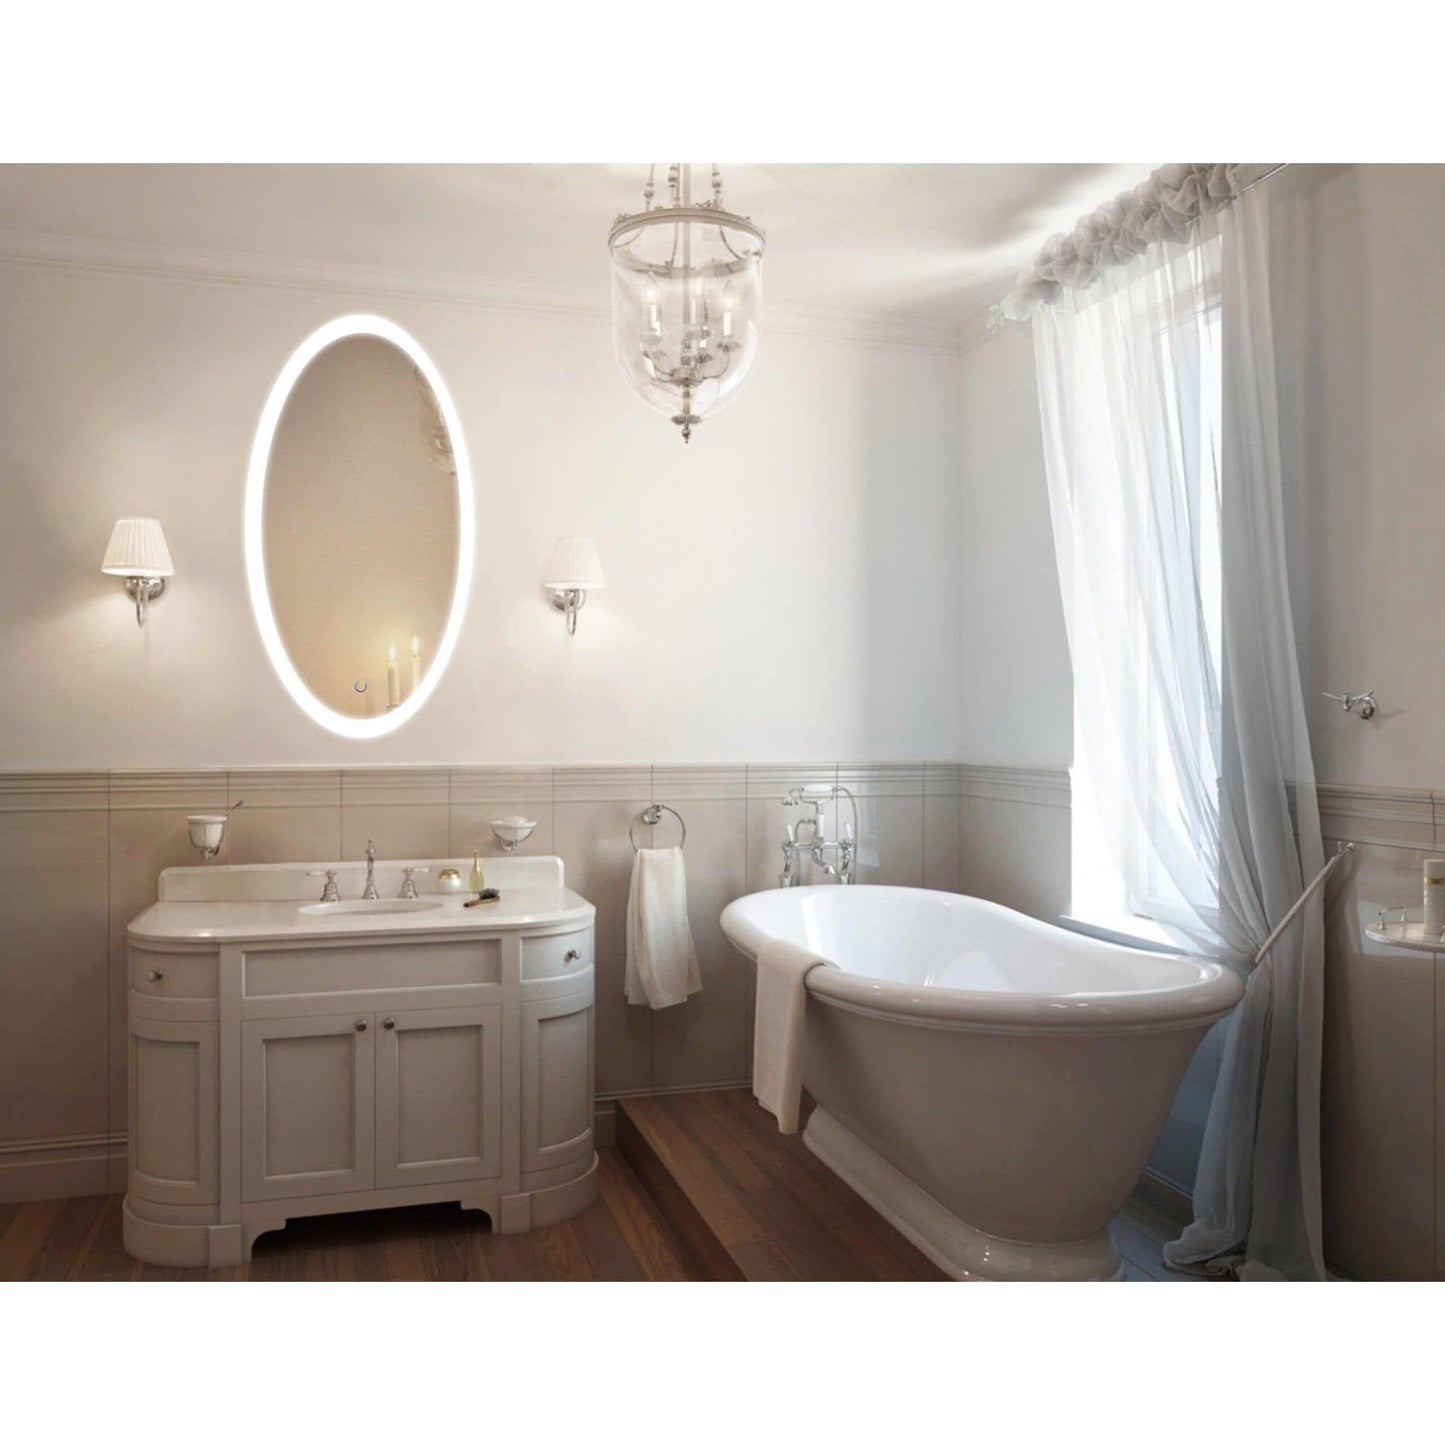 Lighted Bathroom Mirror - Krugg Sol Oval 24W-44H - SOL2444O